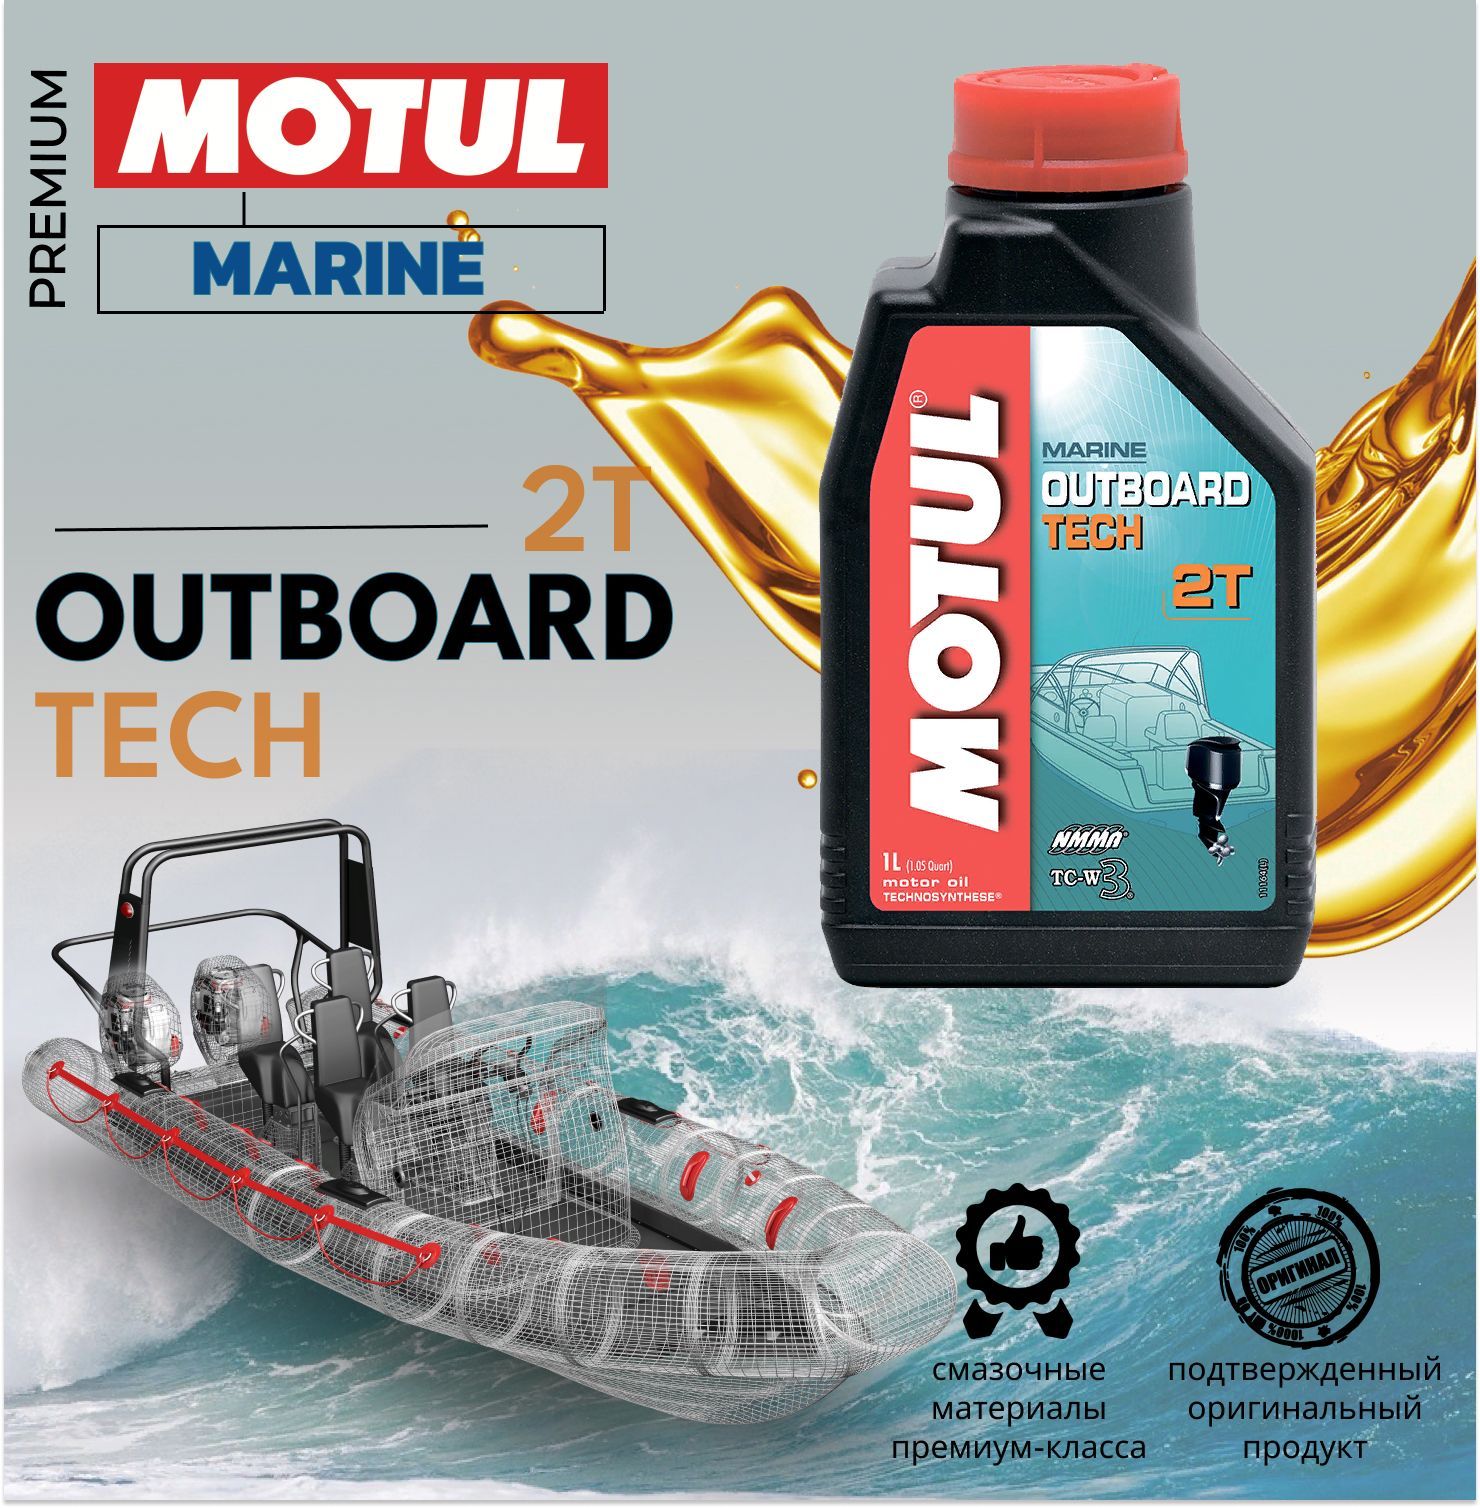 Motul outboard tech 2t